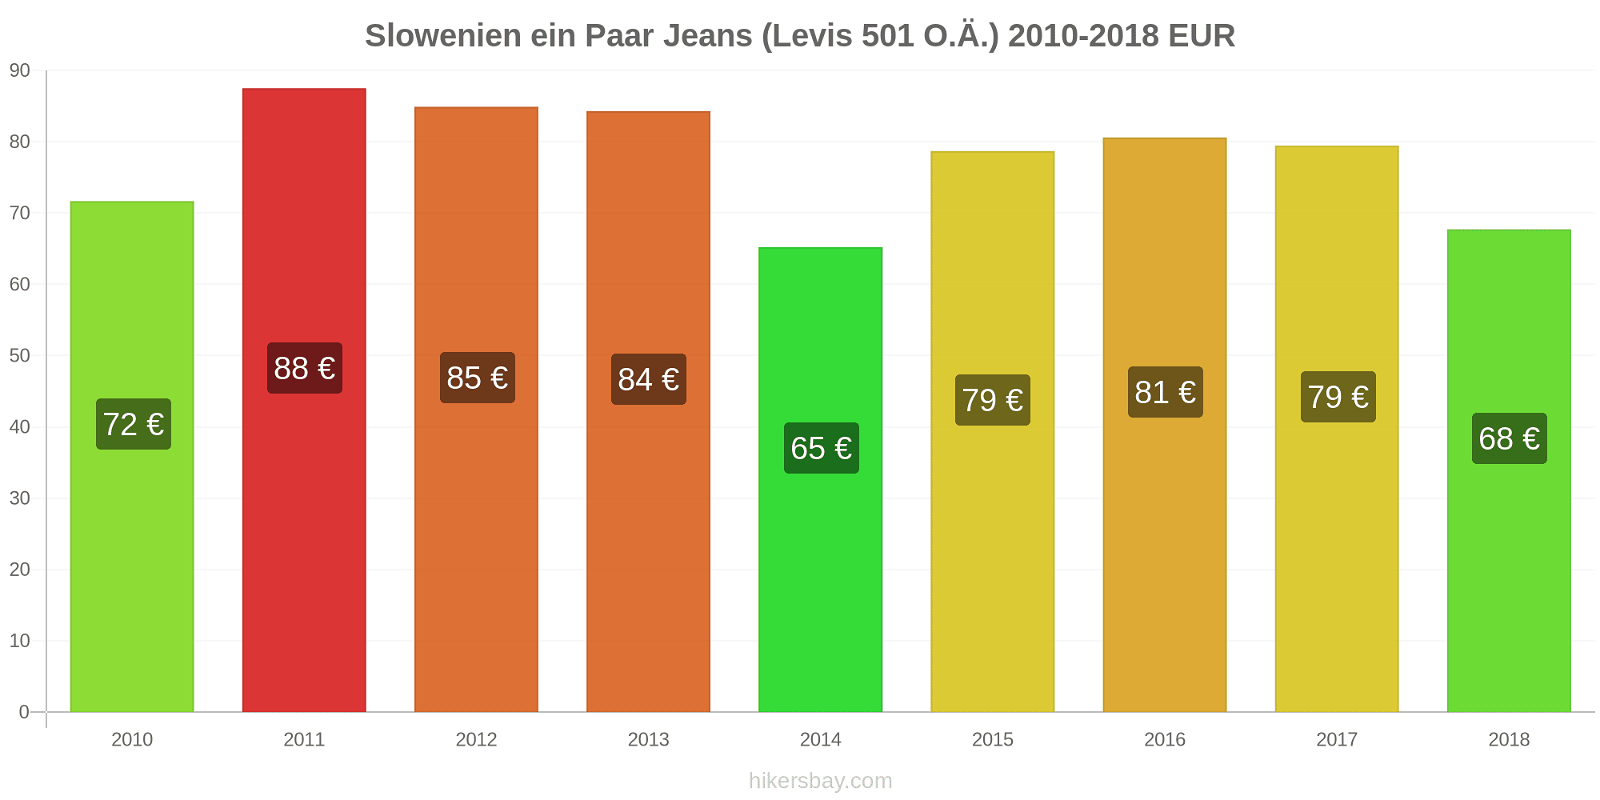 Slowenien Preisänderungen 1 Paar Jeans (Levis 501 oder ähnlich) hikersbay.com